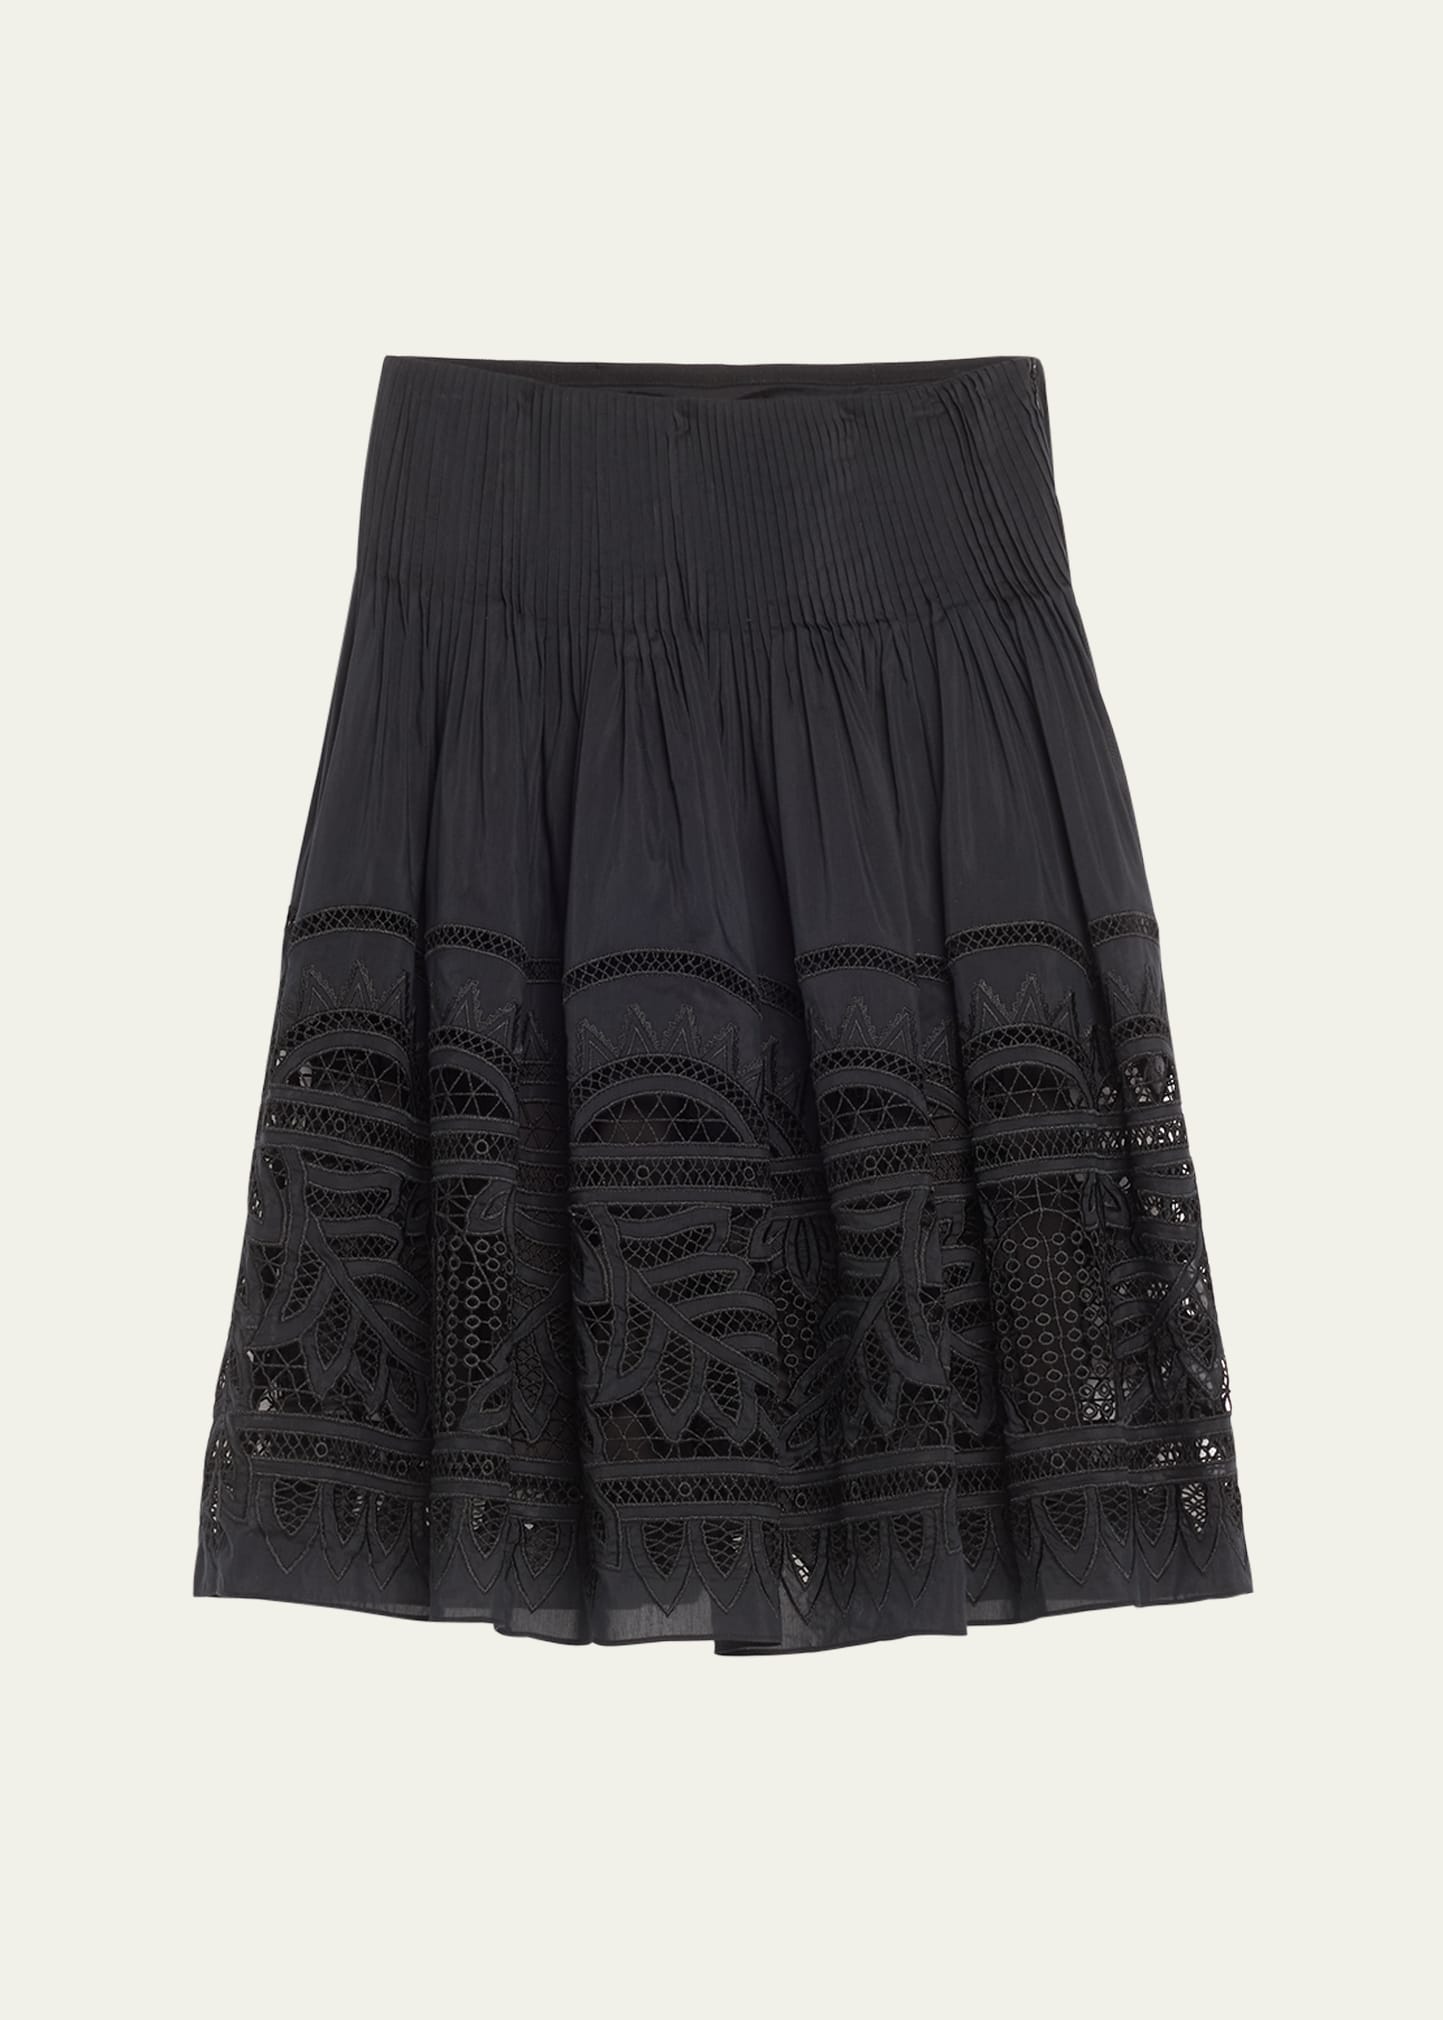 Tayla Pleated Embroidered Midi Skirt